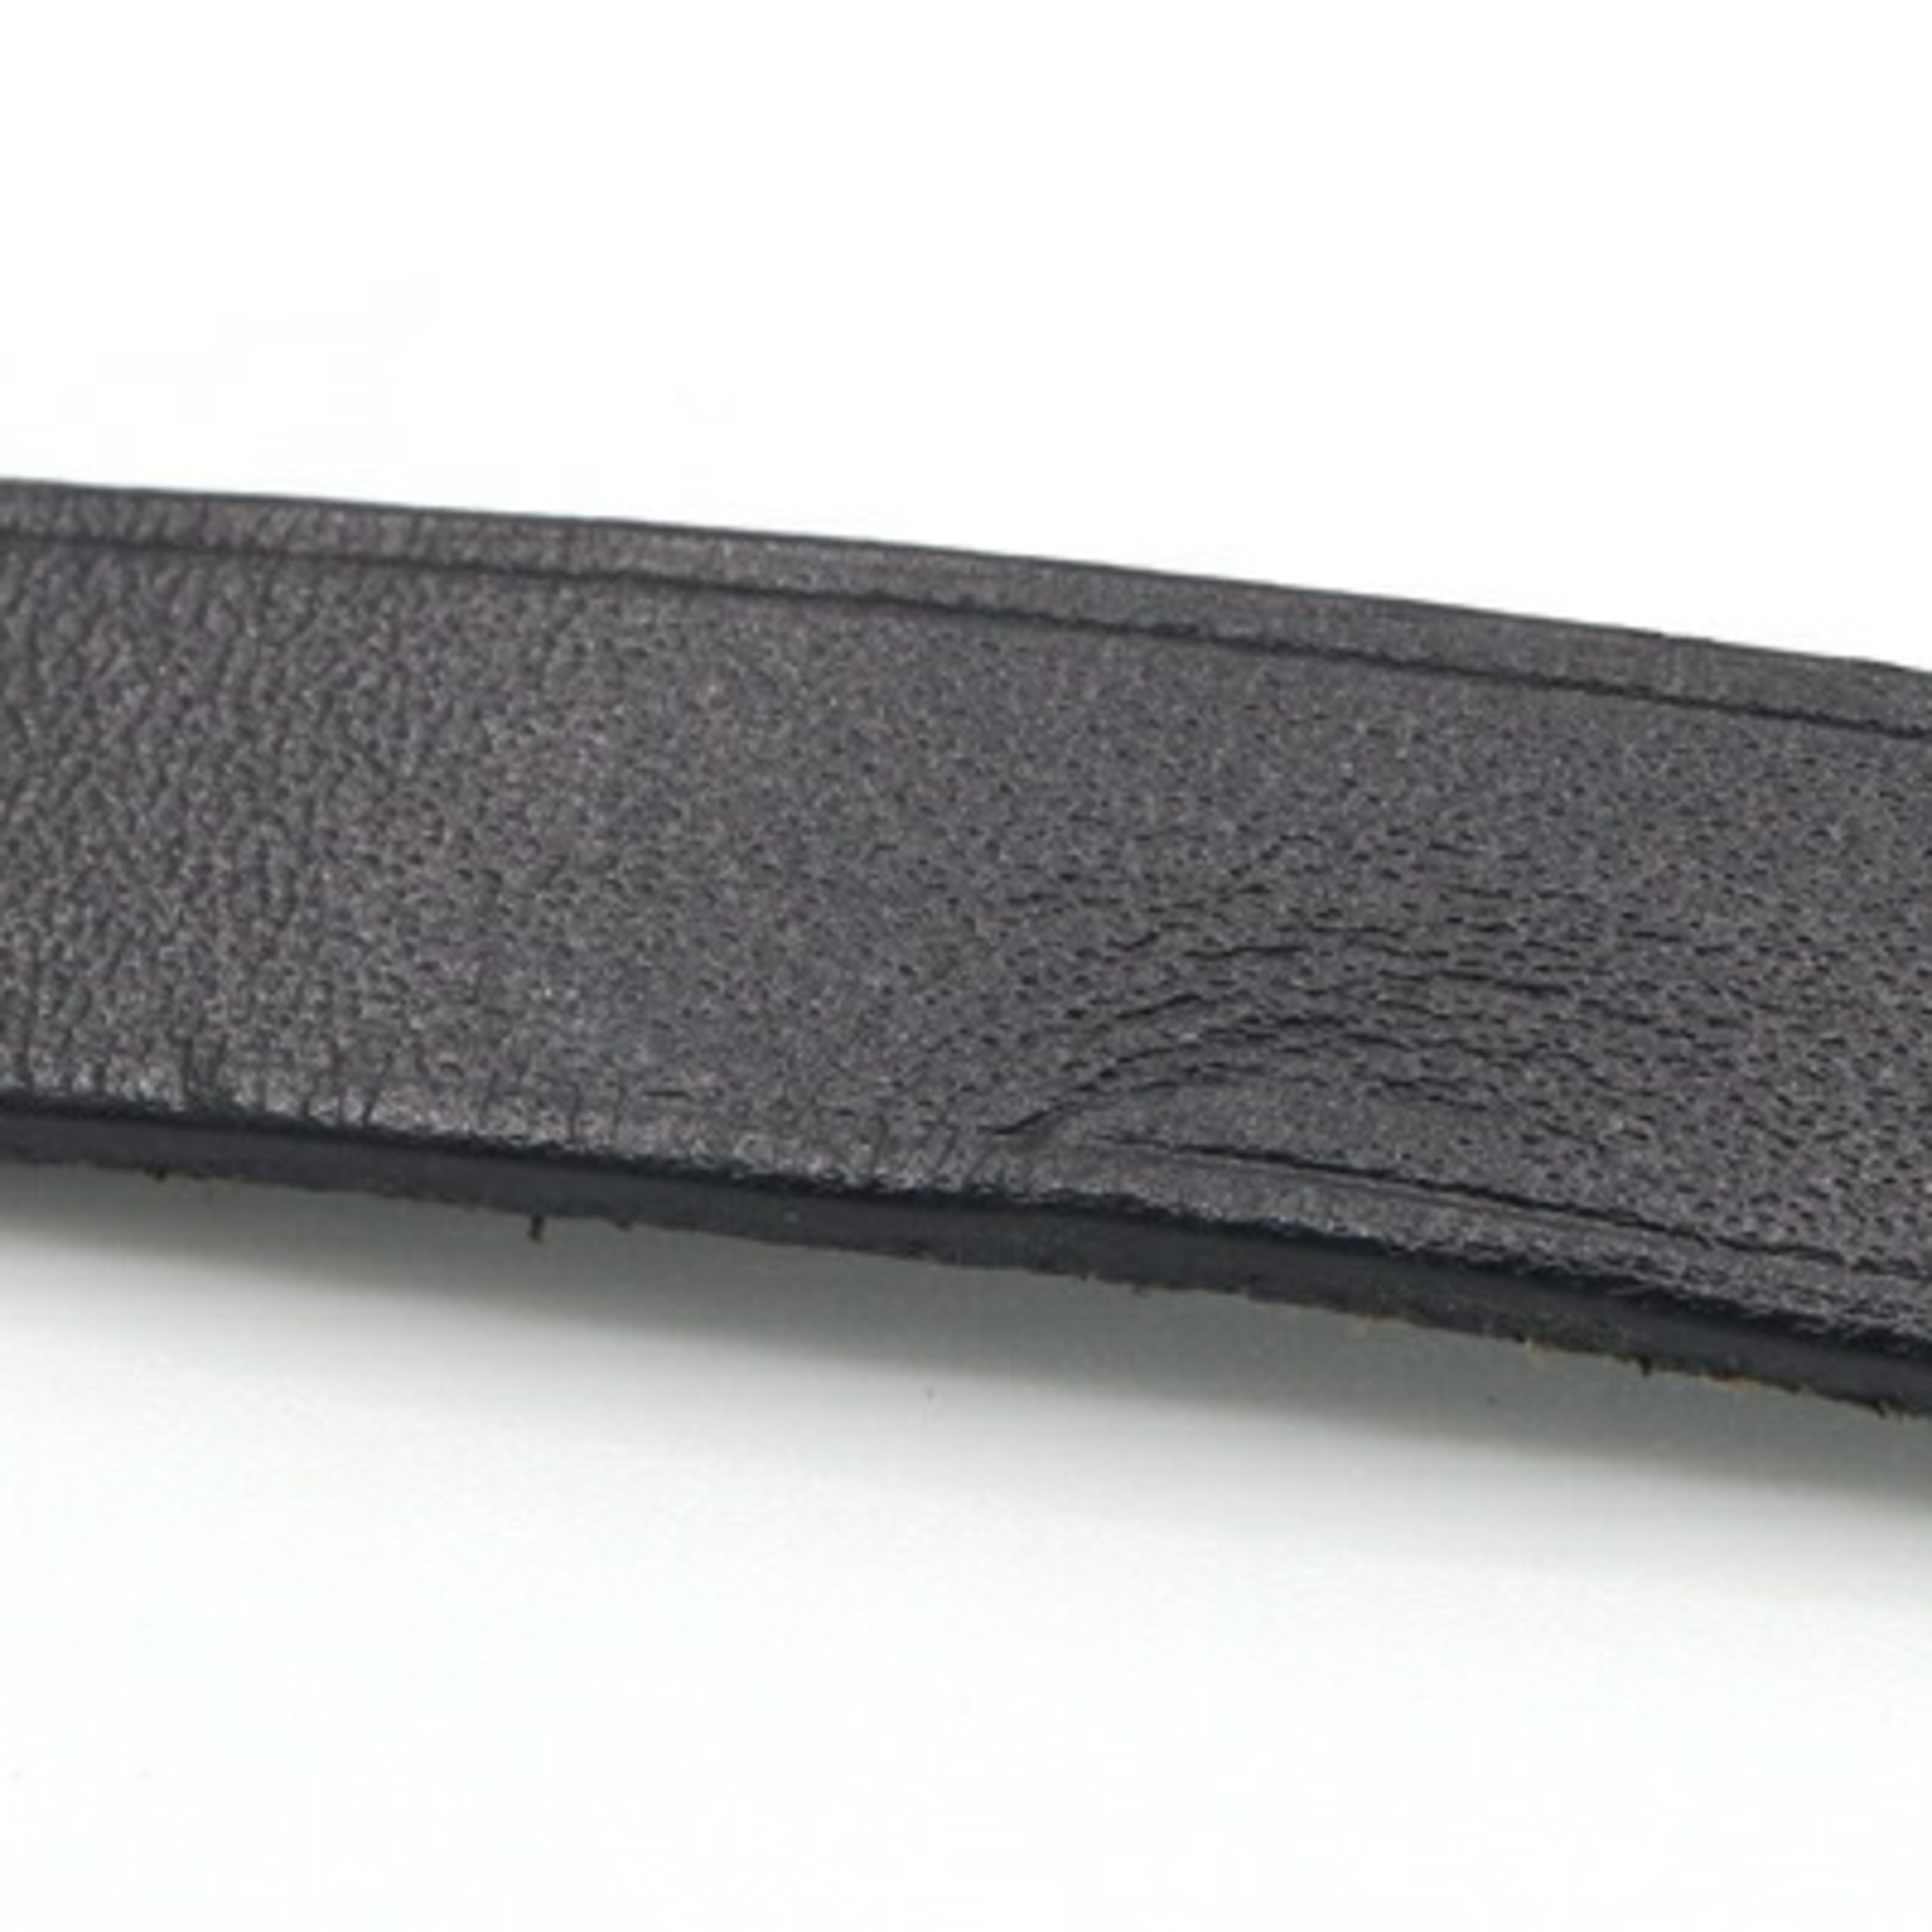 Hermes Bracelet API2 Black Leather □D Engraved 2000 Made M Size Bangle 3 Layer Belt HERMES